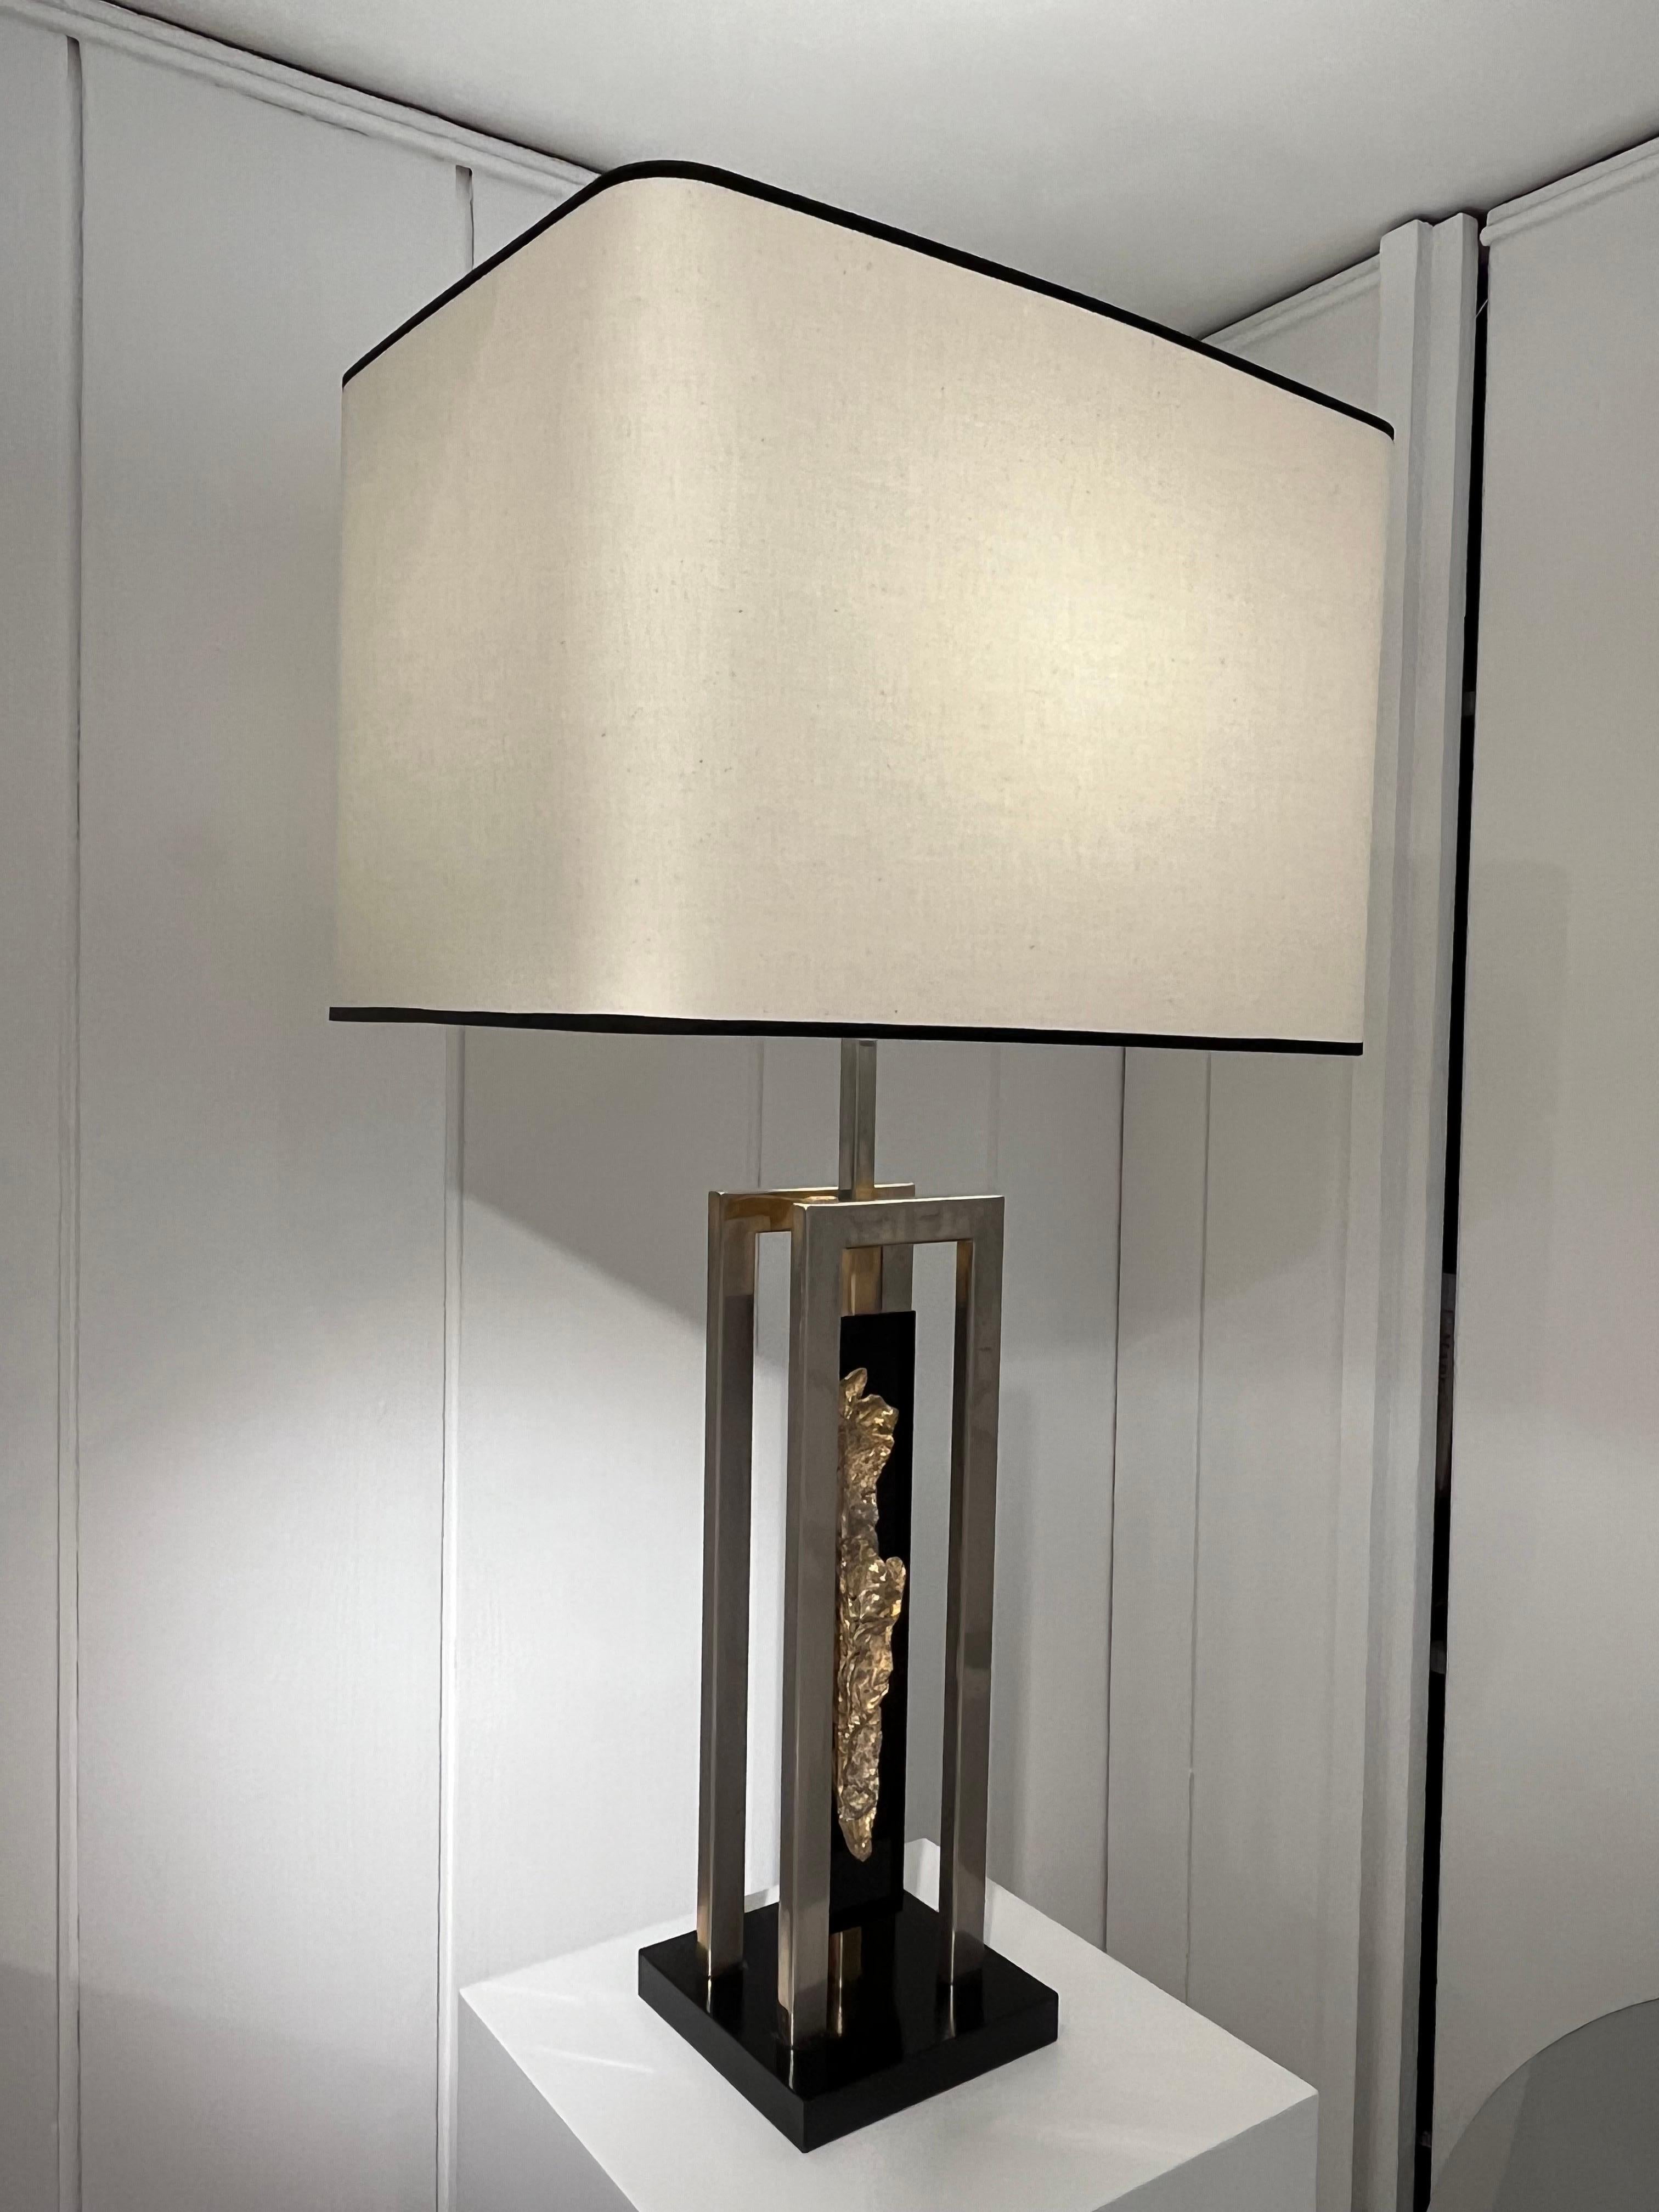 Lampe à poser vintage en acier chromé et sculpture en laiton montée sur lucite.
Design de Philippe Cheverny
Nouvel abat-jour.

